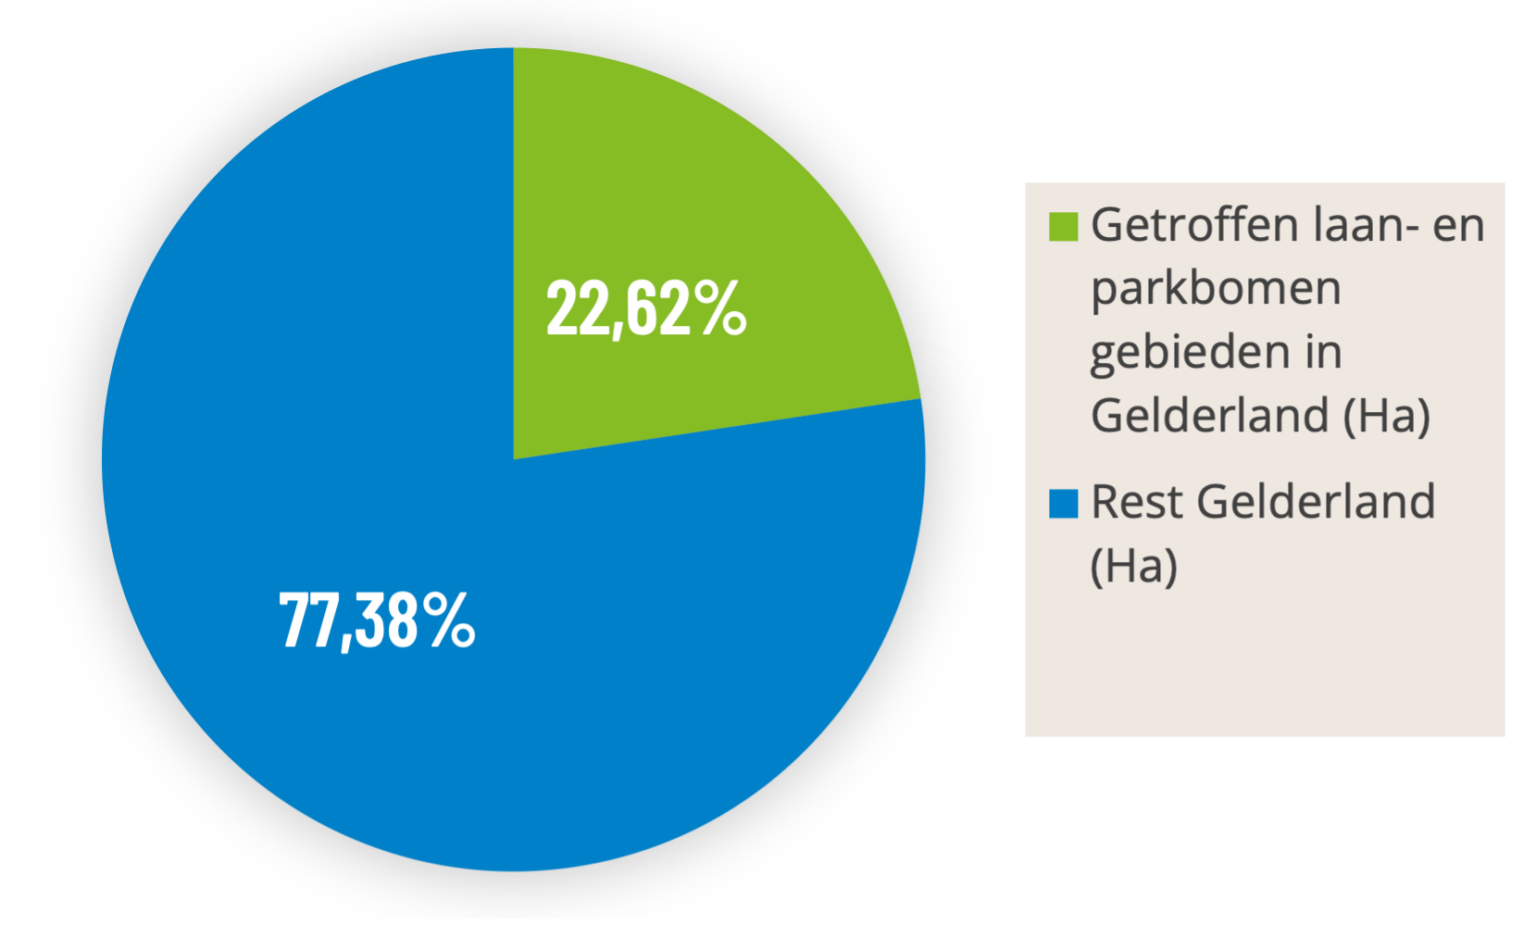 Getroffen laan- en parkbomen gebieden in Gelderland (Ha)